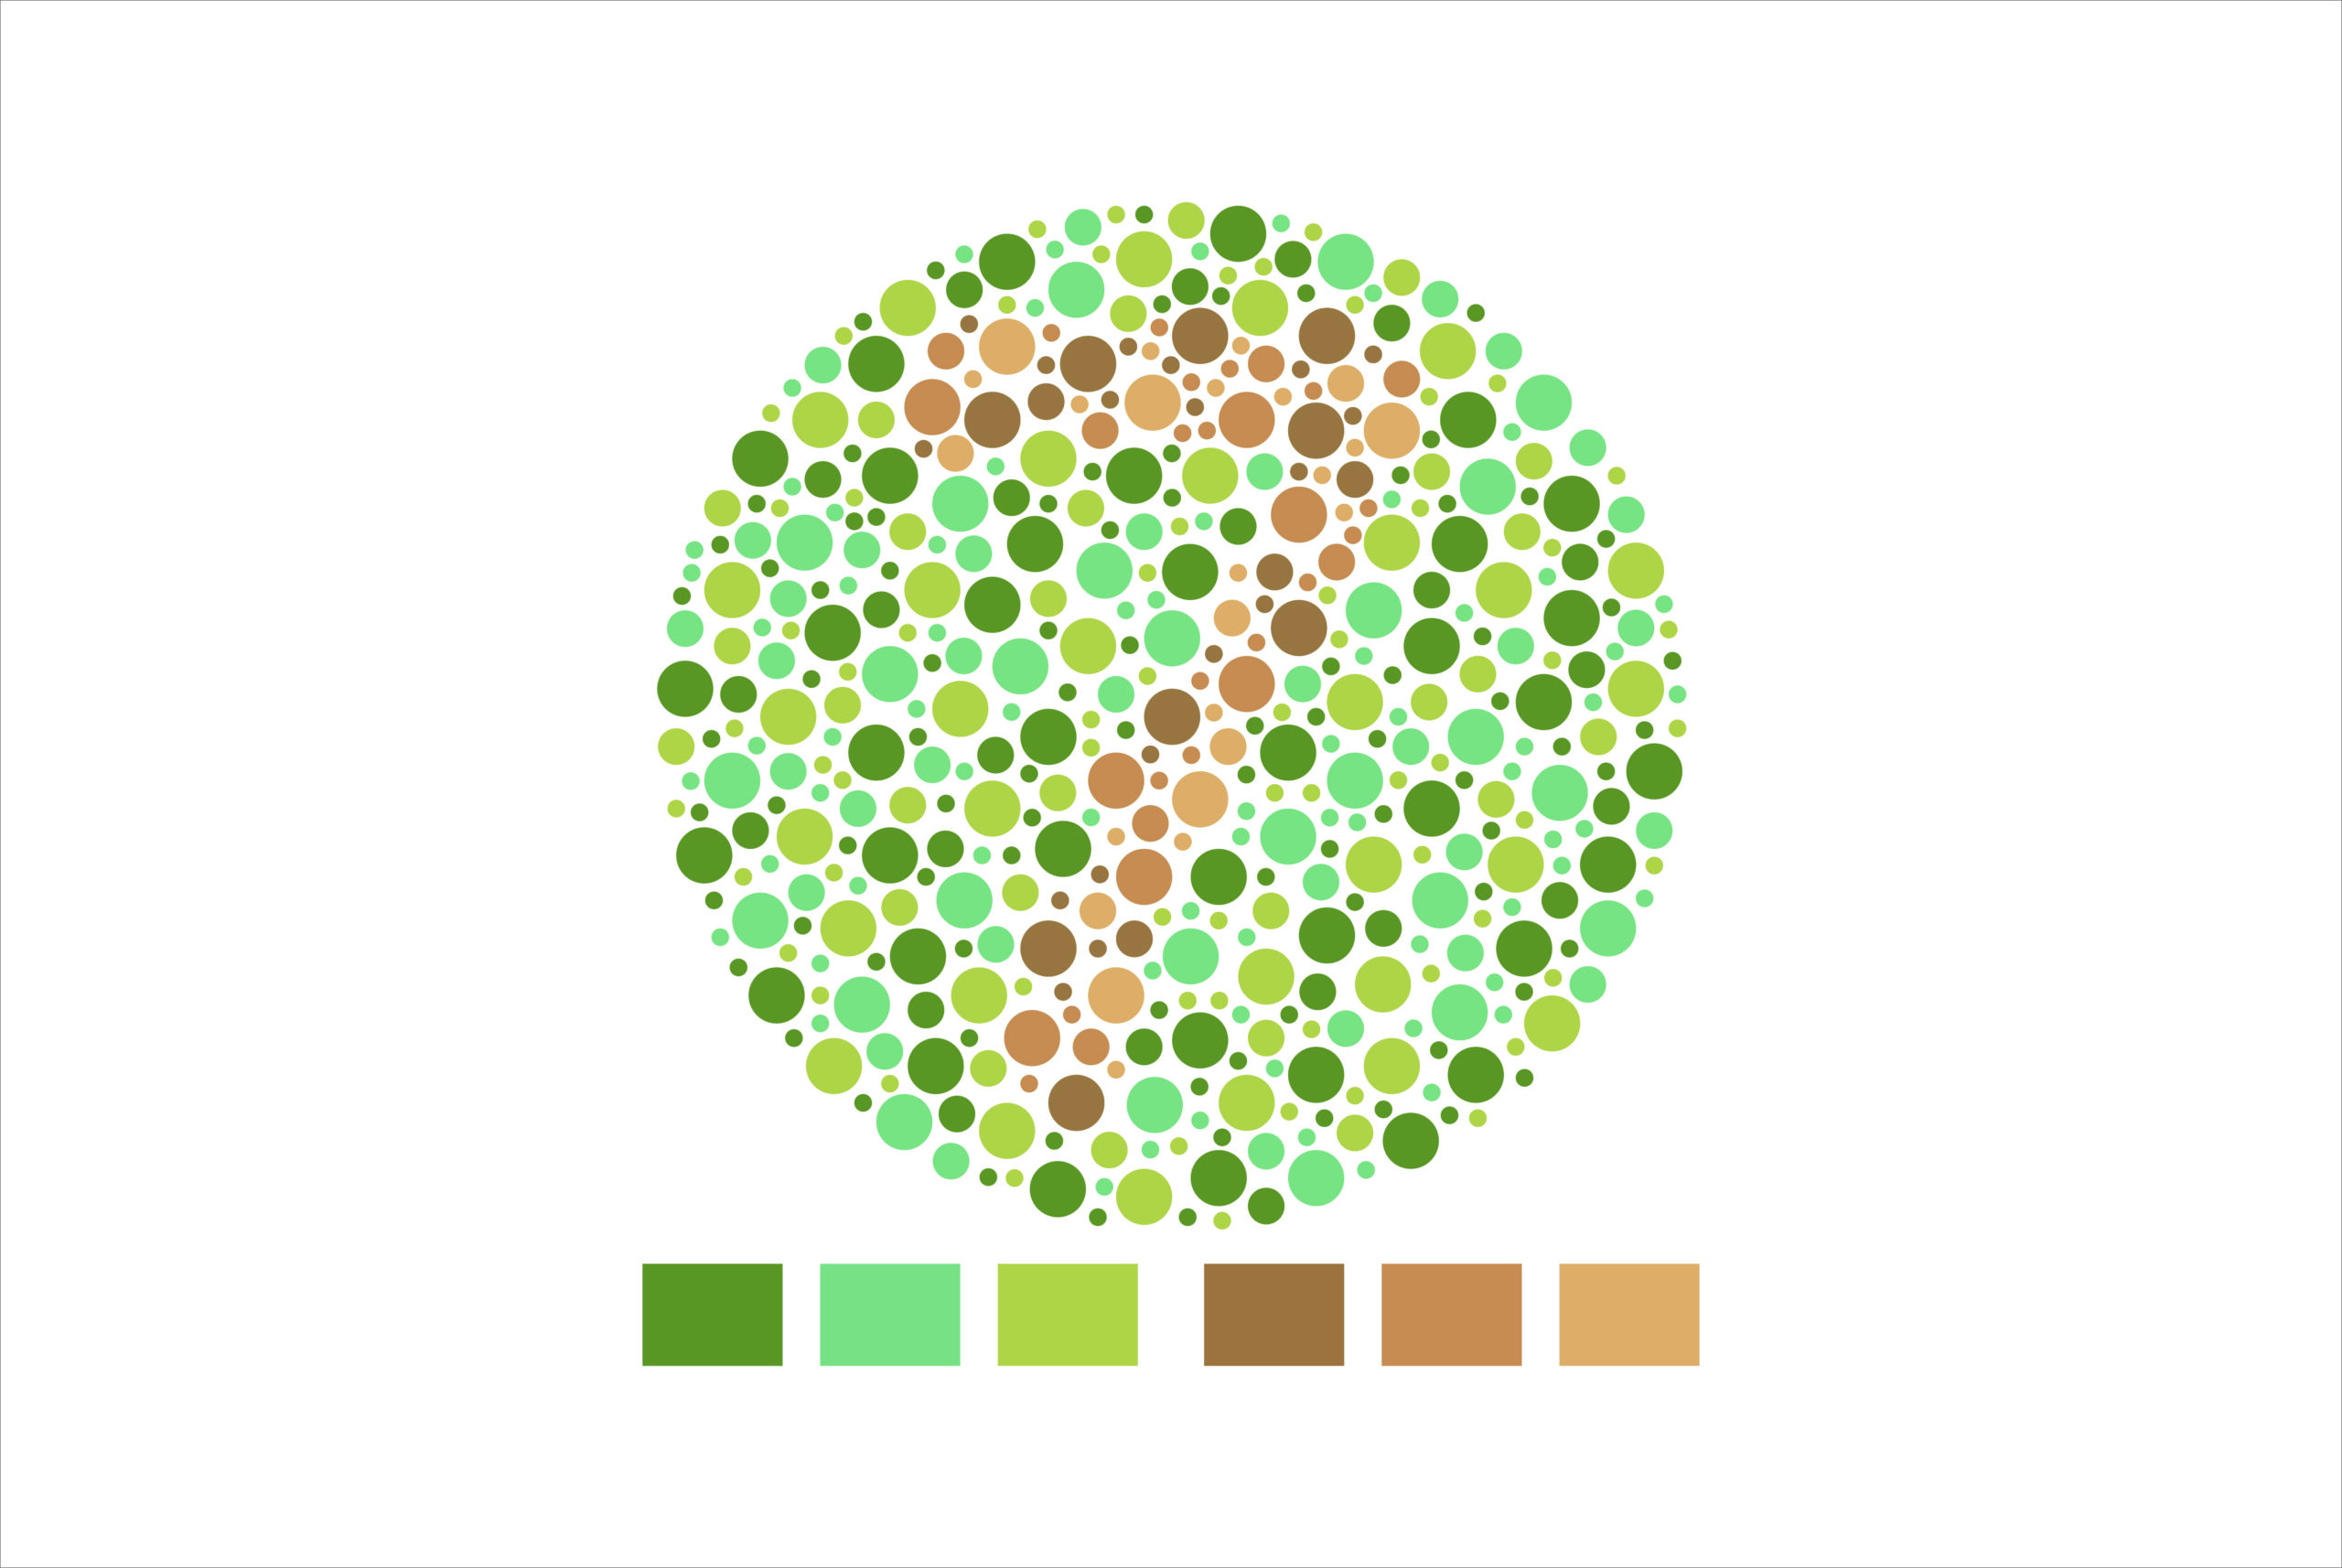 https://lightcolourvision.org/wp-content/uploads/16100-A-BL-EN-Colour-blindness-test-80-scaled.jpg